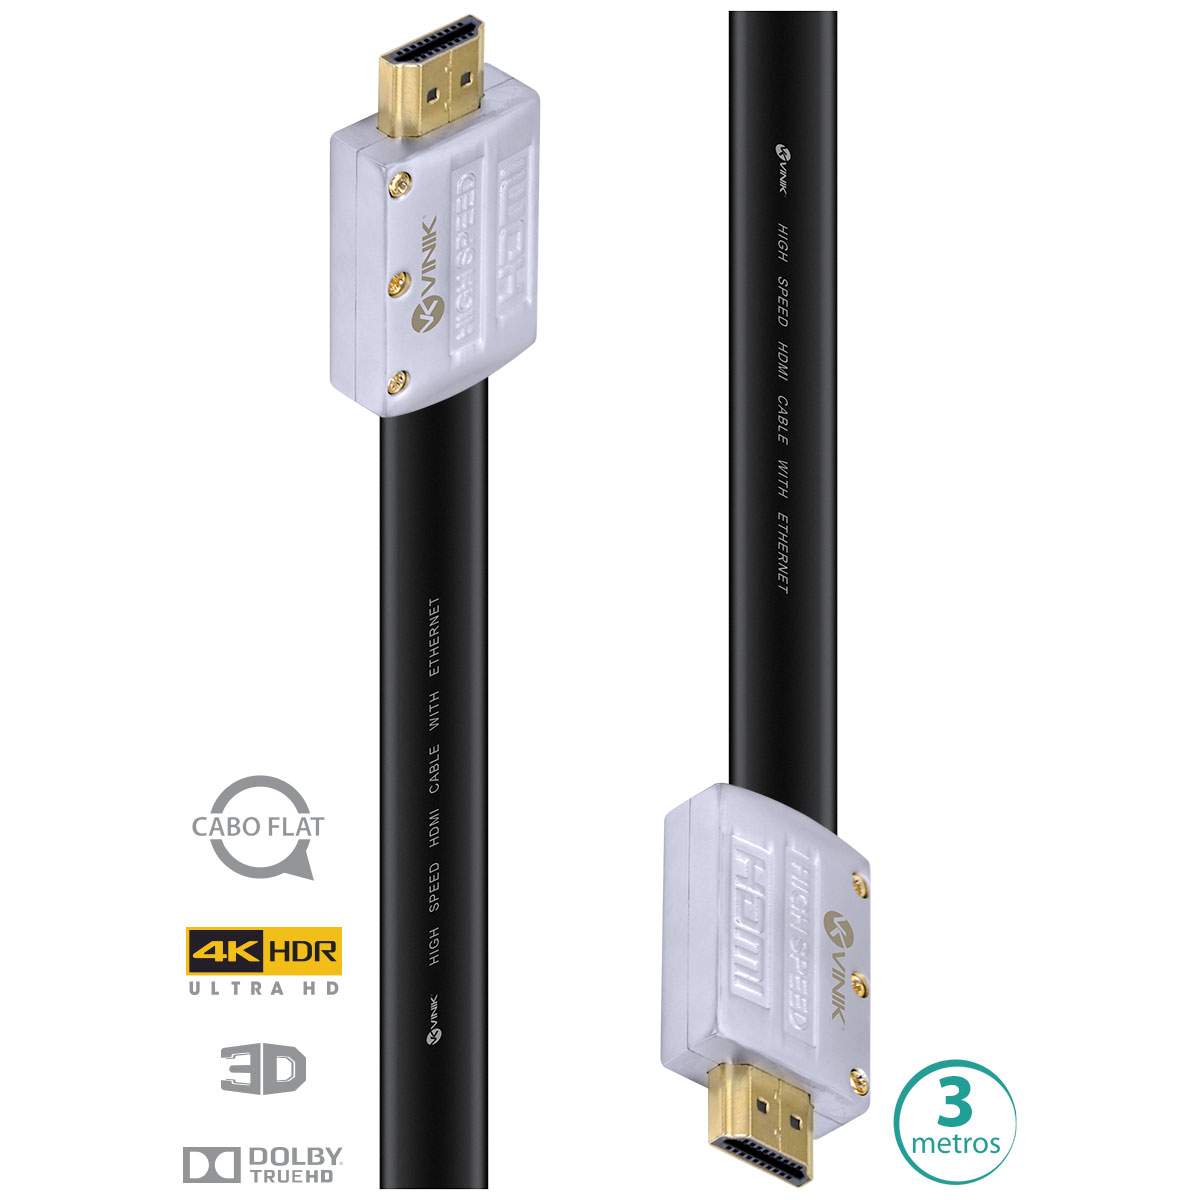 Cabo HDMI 2.0 4K ULTRA HD 3D Conexao ETHERNET FLAT com Conector Desmontavel 3 Metros - H20FL-3